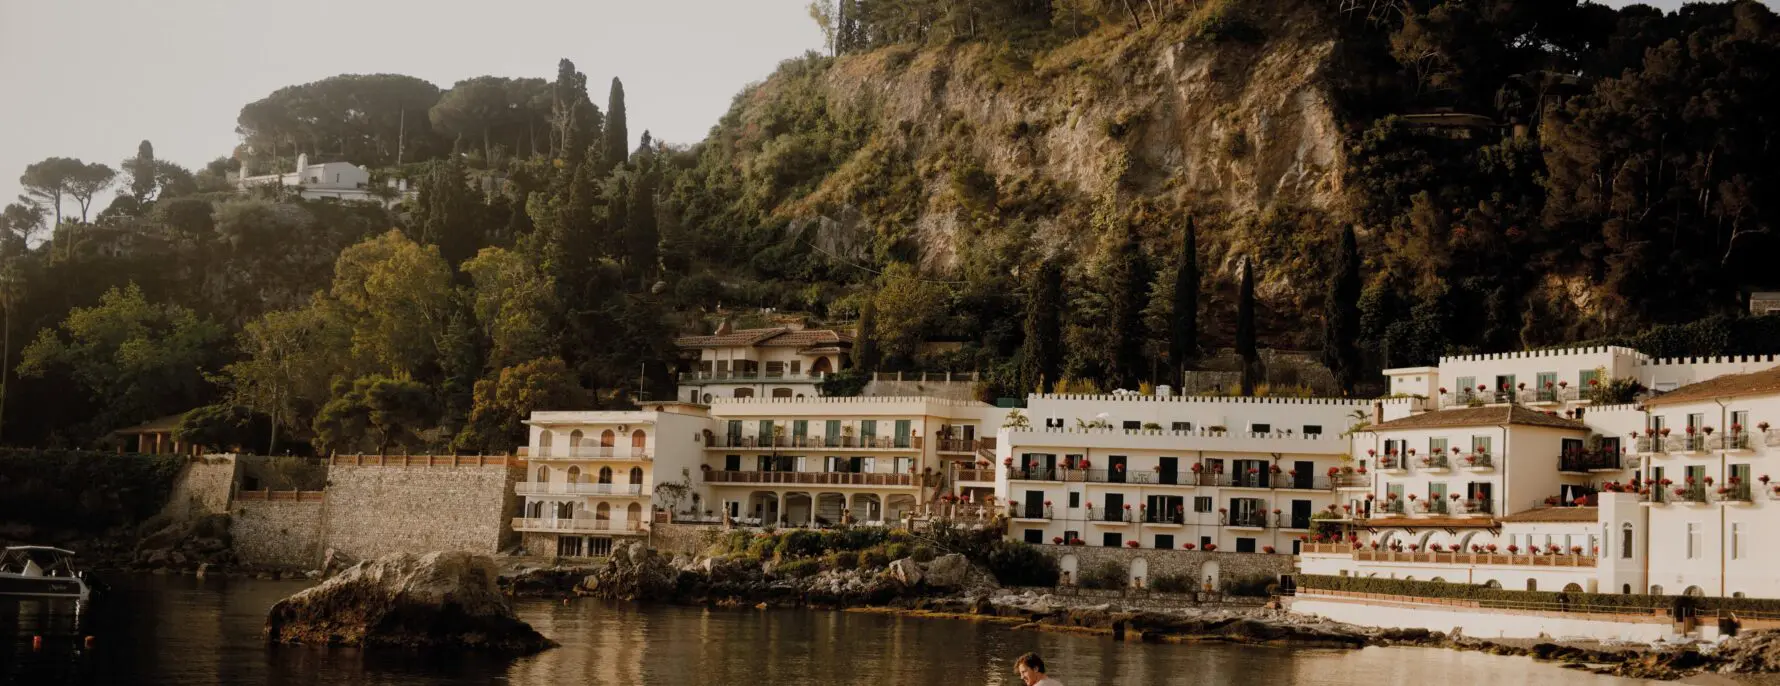 Nest Italy: Hotel Villa Sant'Andrea, Taormina